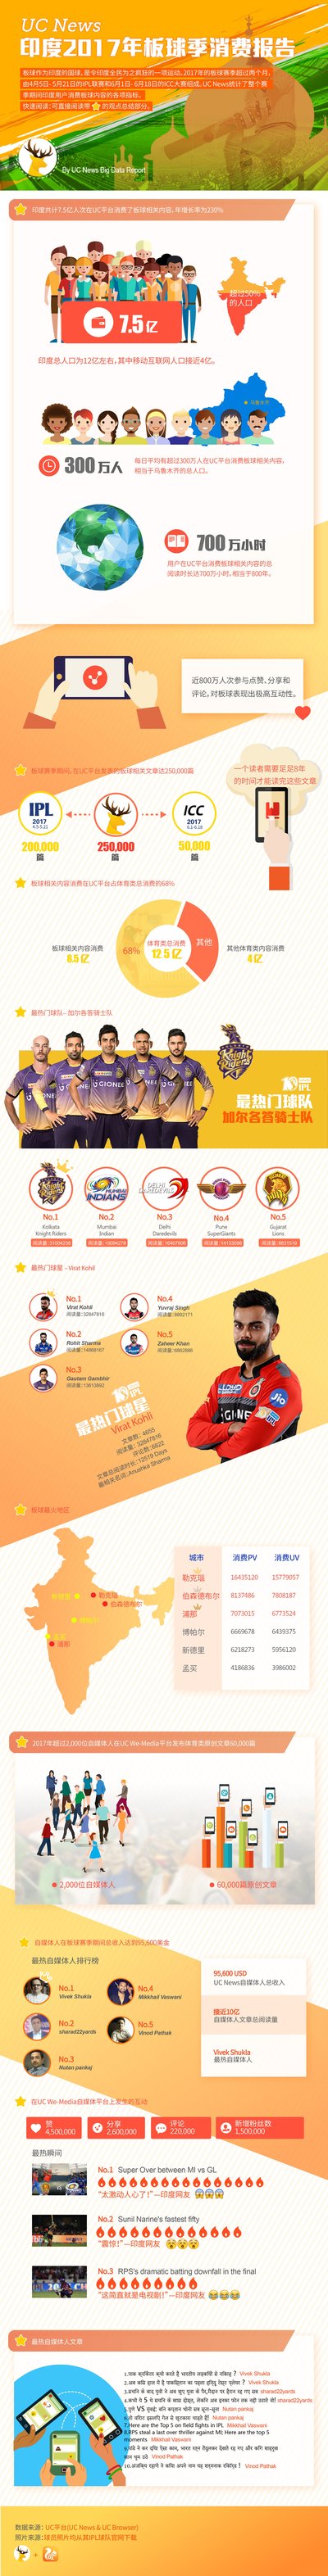 印度2017年板球季消费报告